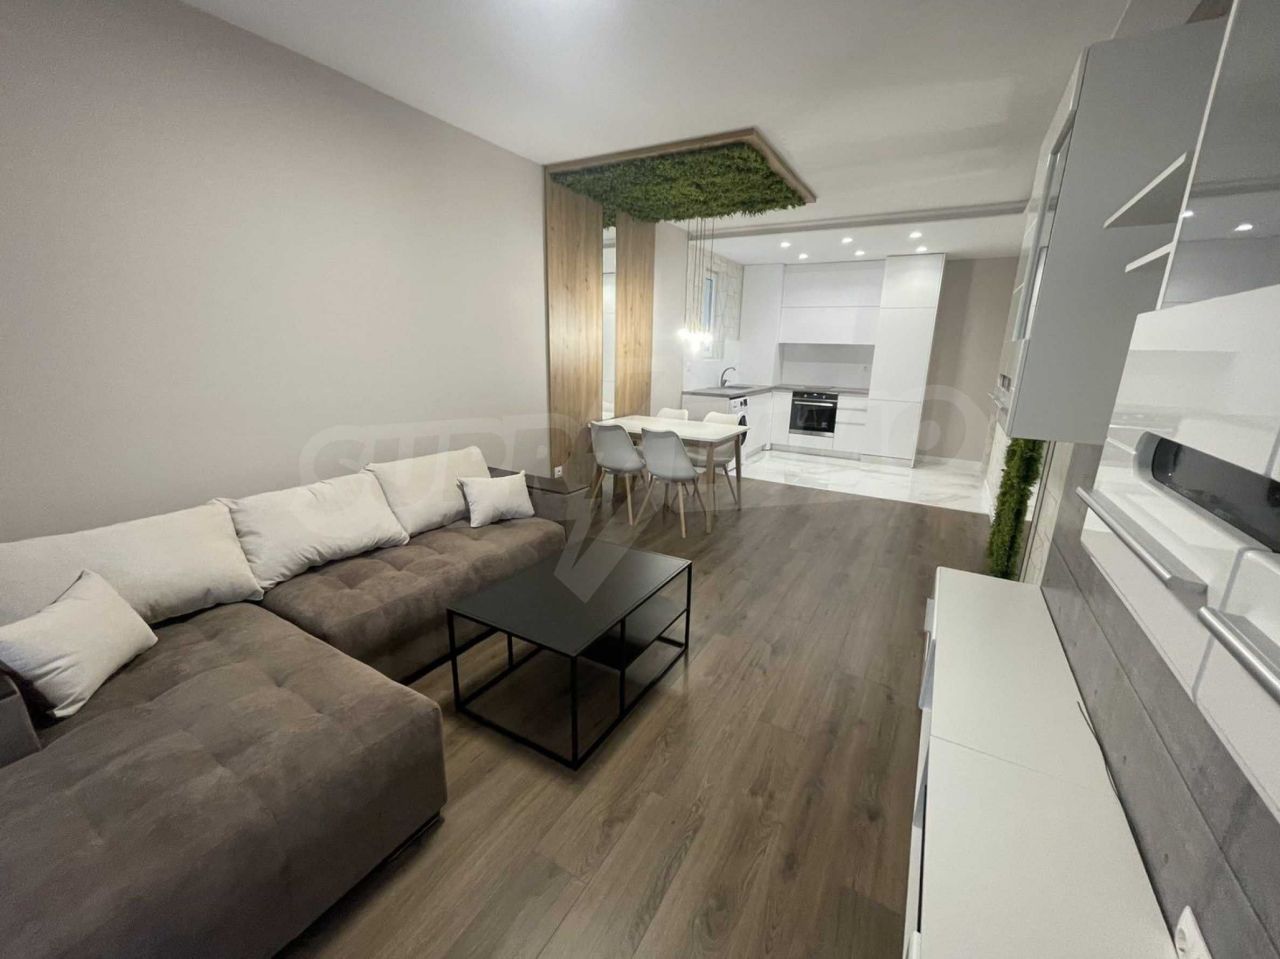 Apartment in Plovdiv, Bulgaria, 76.22 sq.m - picture 1